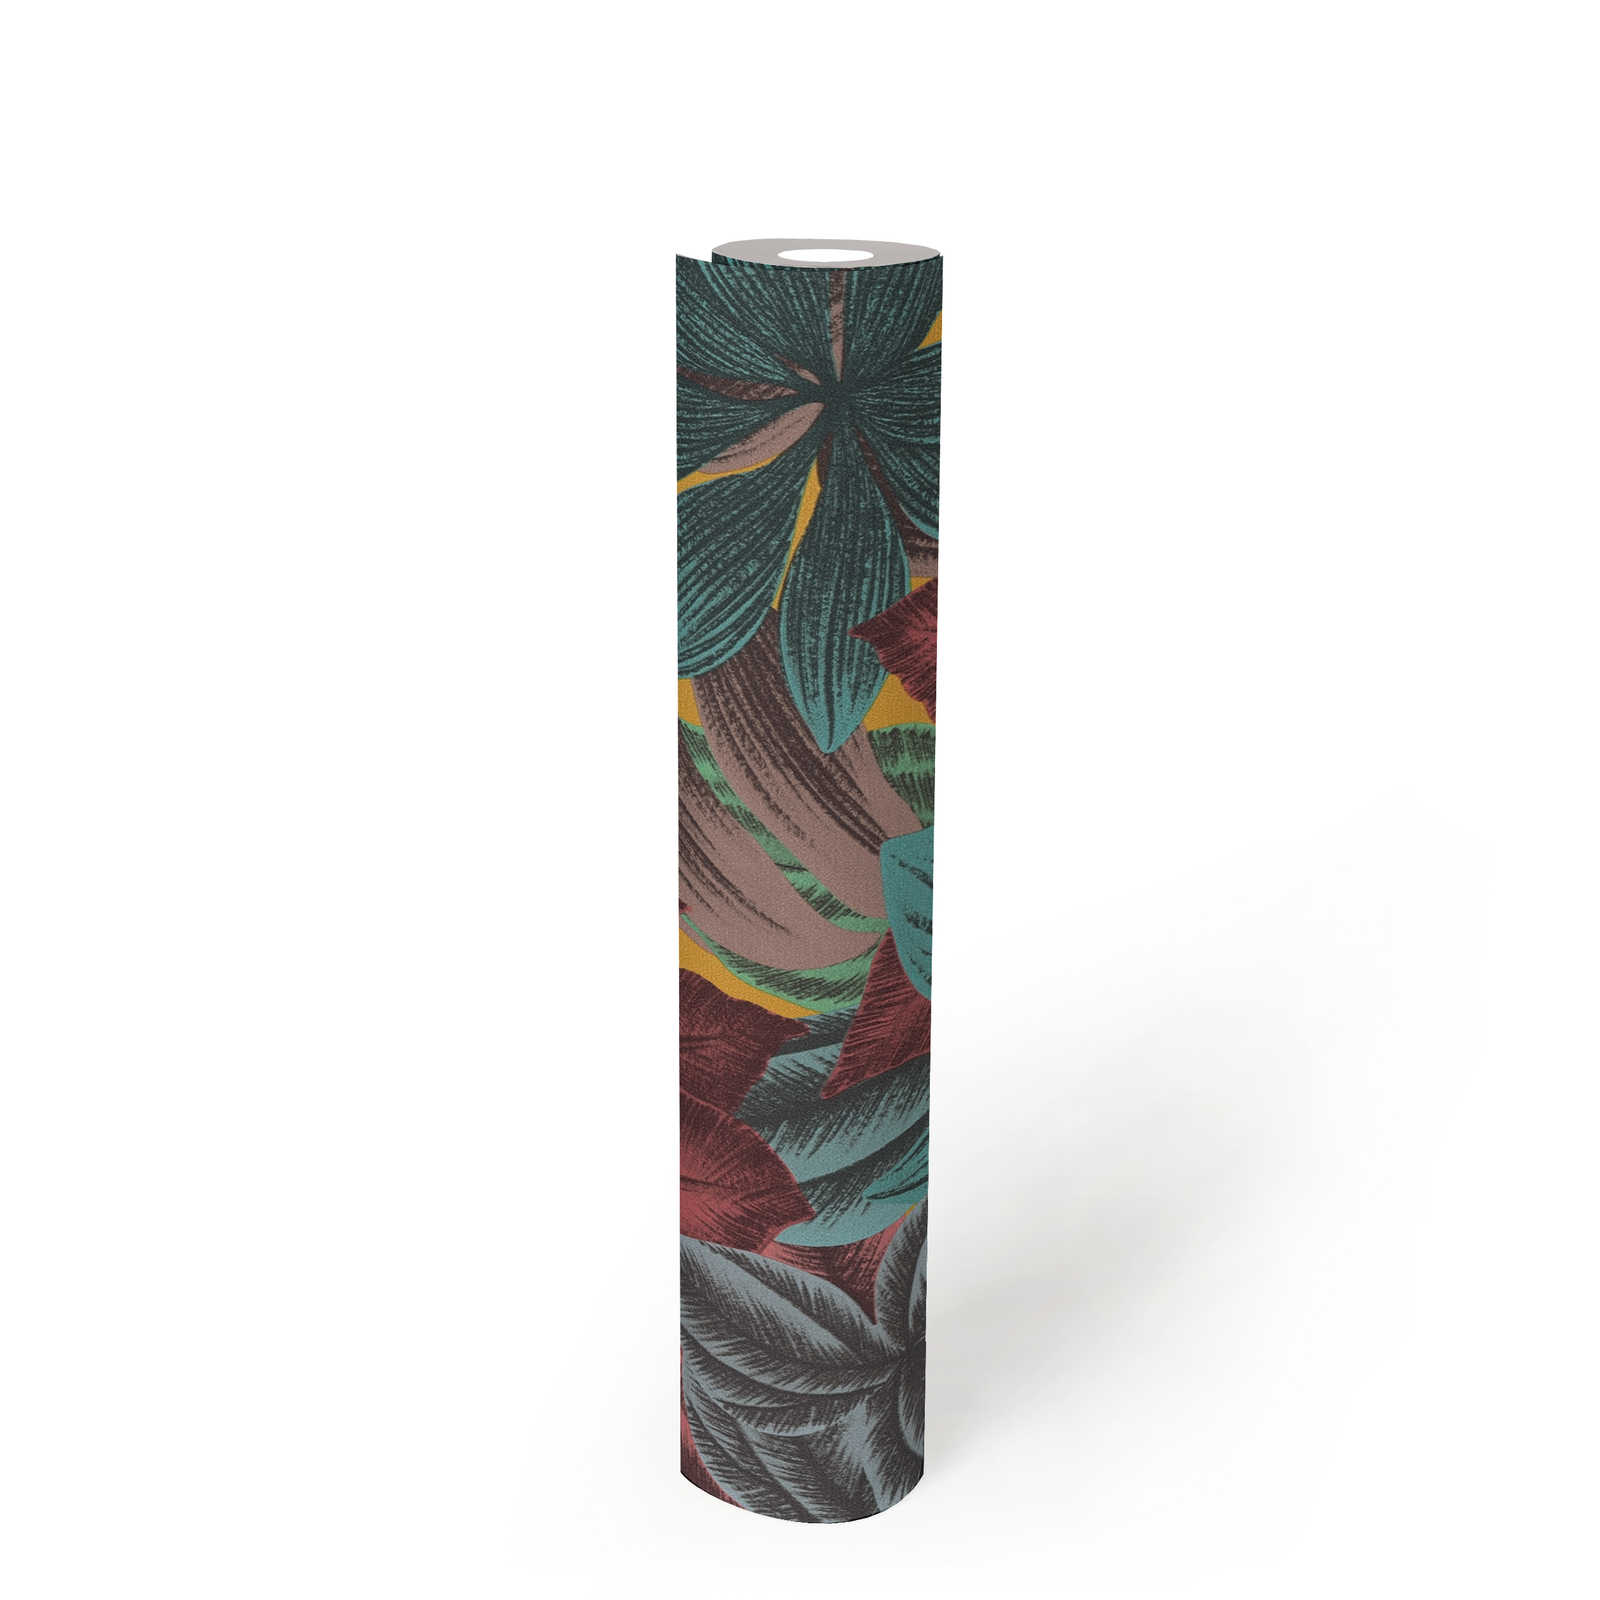             Papier peint intissé avec motif de feuilles dans des couleurs vives - multicolore, bleu, rose
        